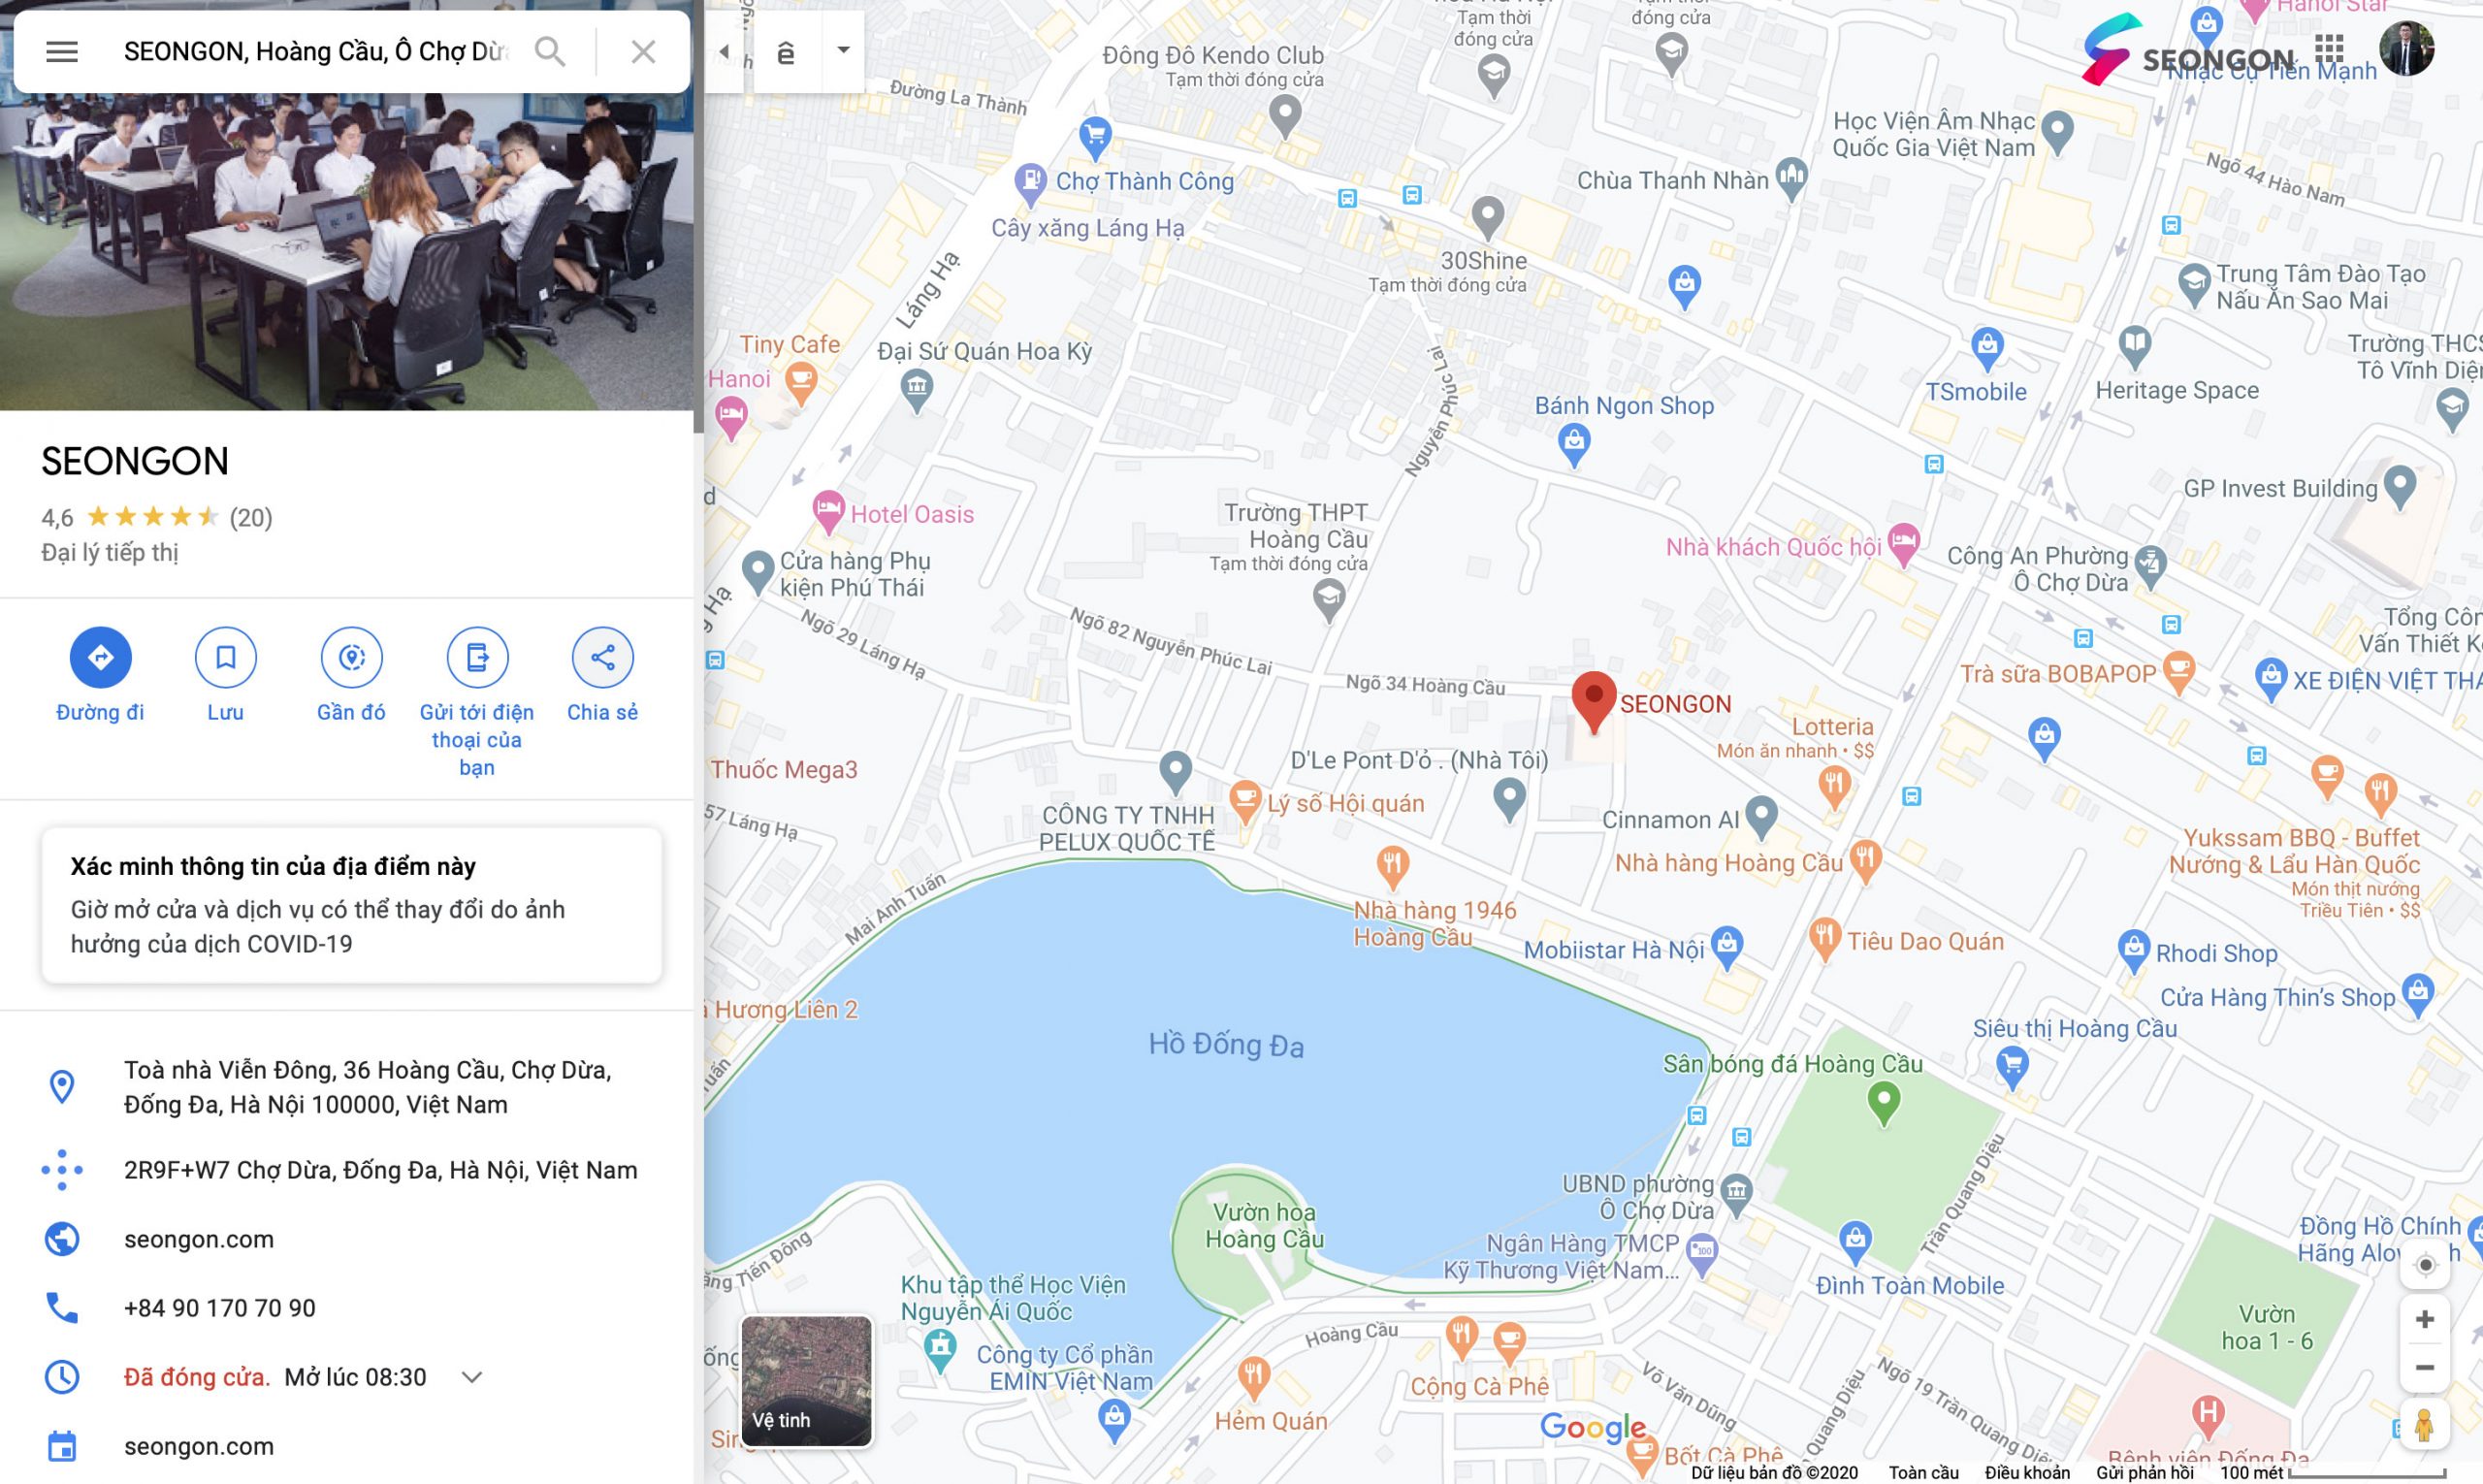 Thông tin doanh nghiệp hiển thị trên Google Maps